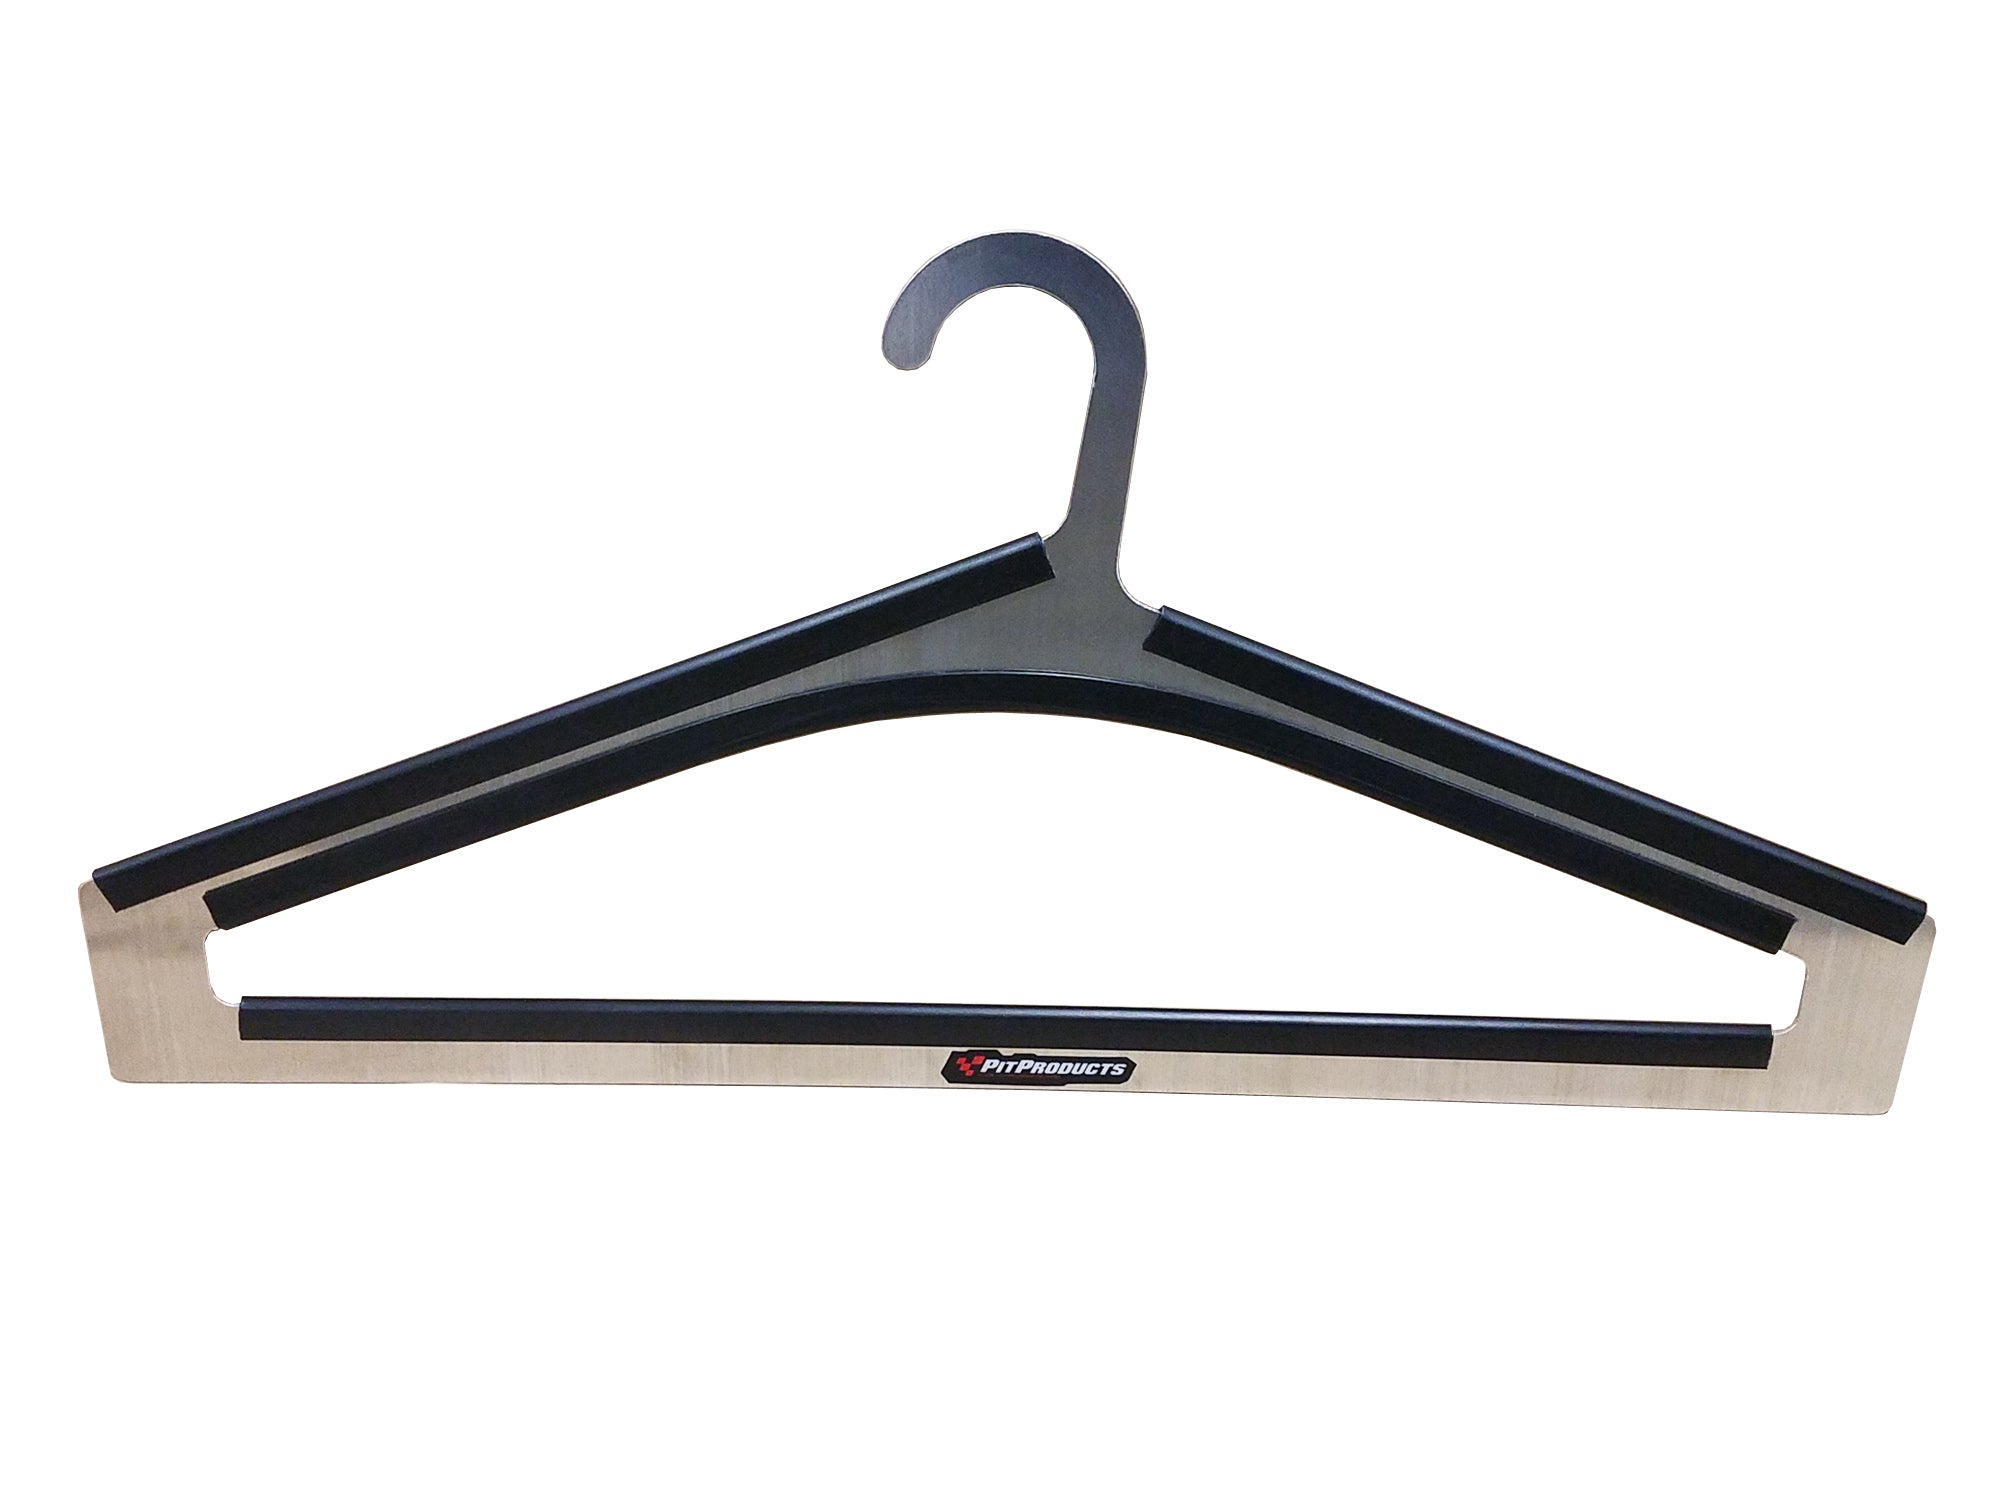 Closet Hanger - Standard Style